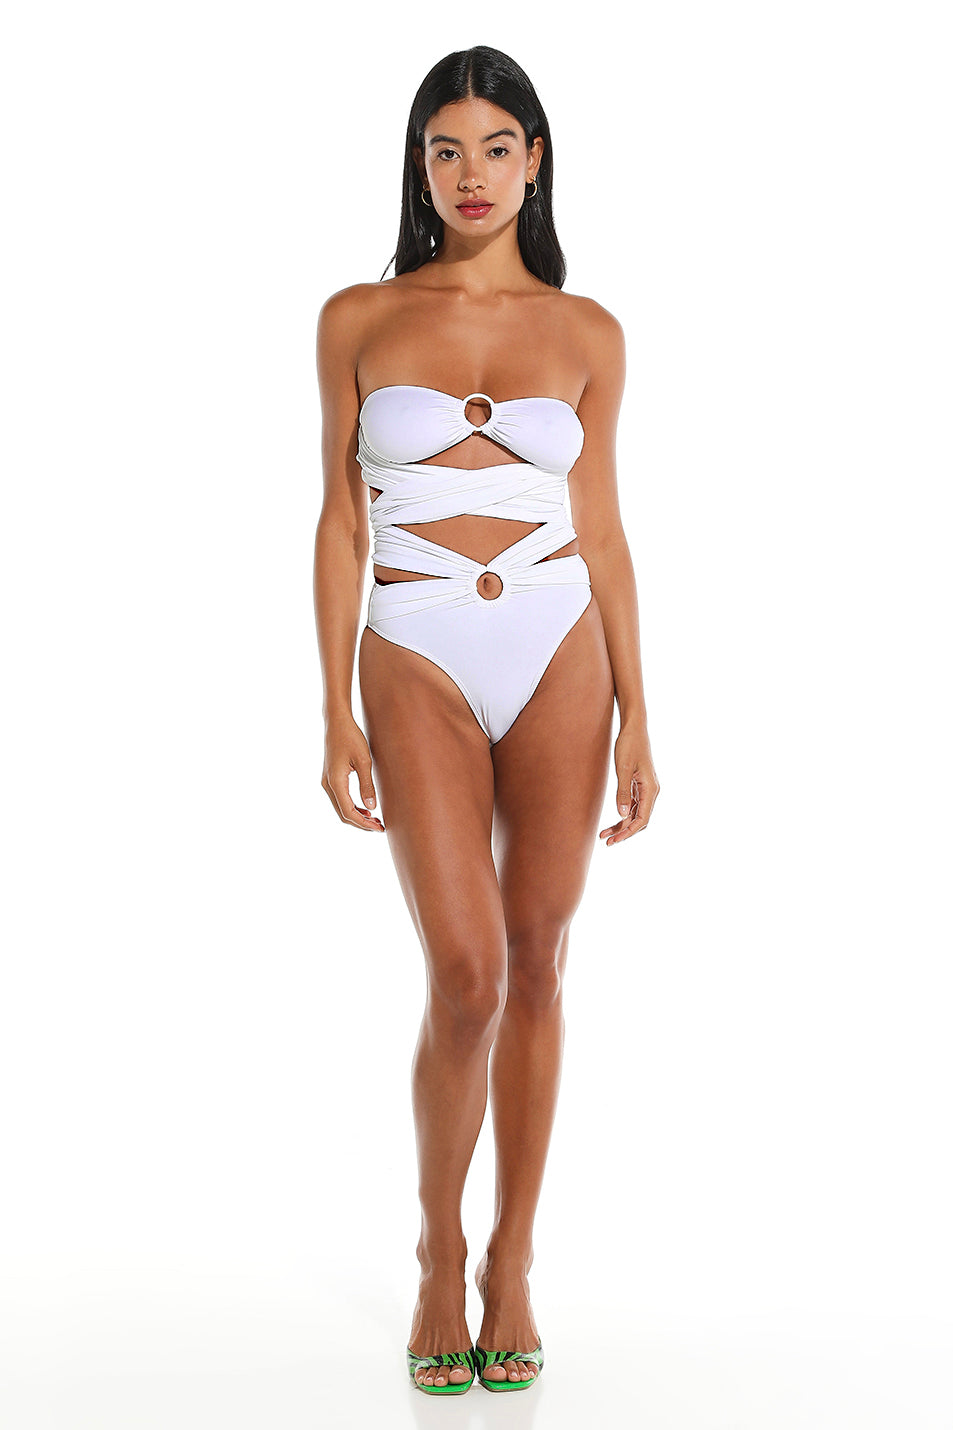 Toghzan bikini bottom - White